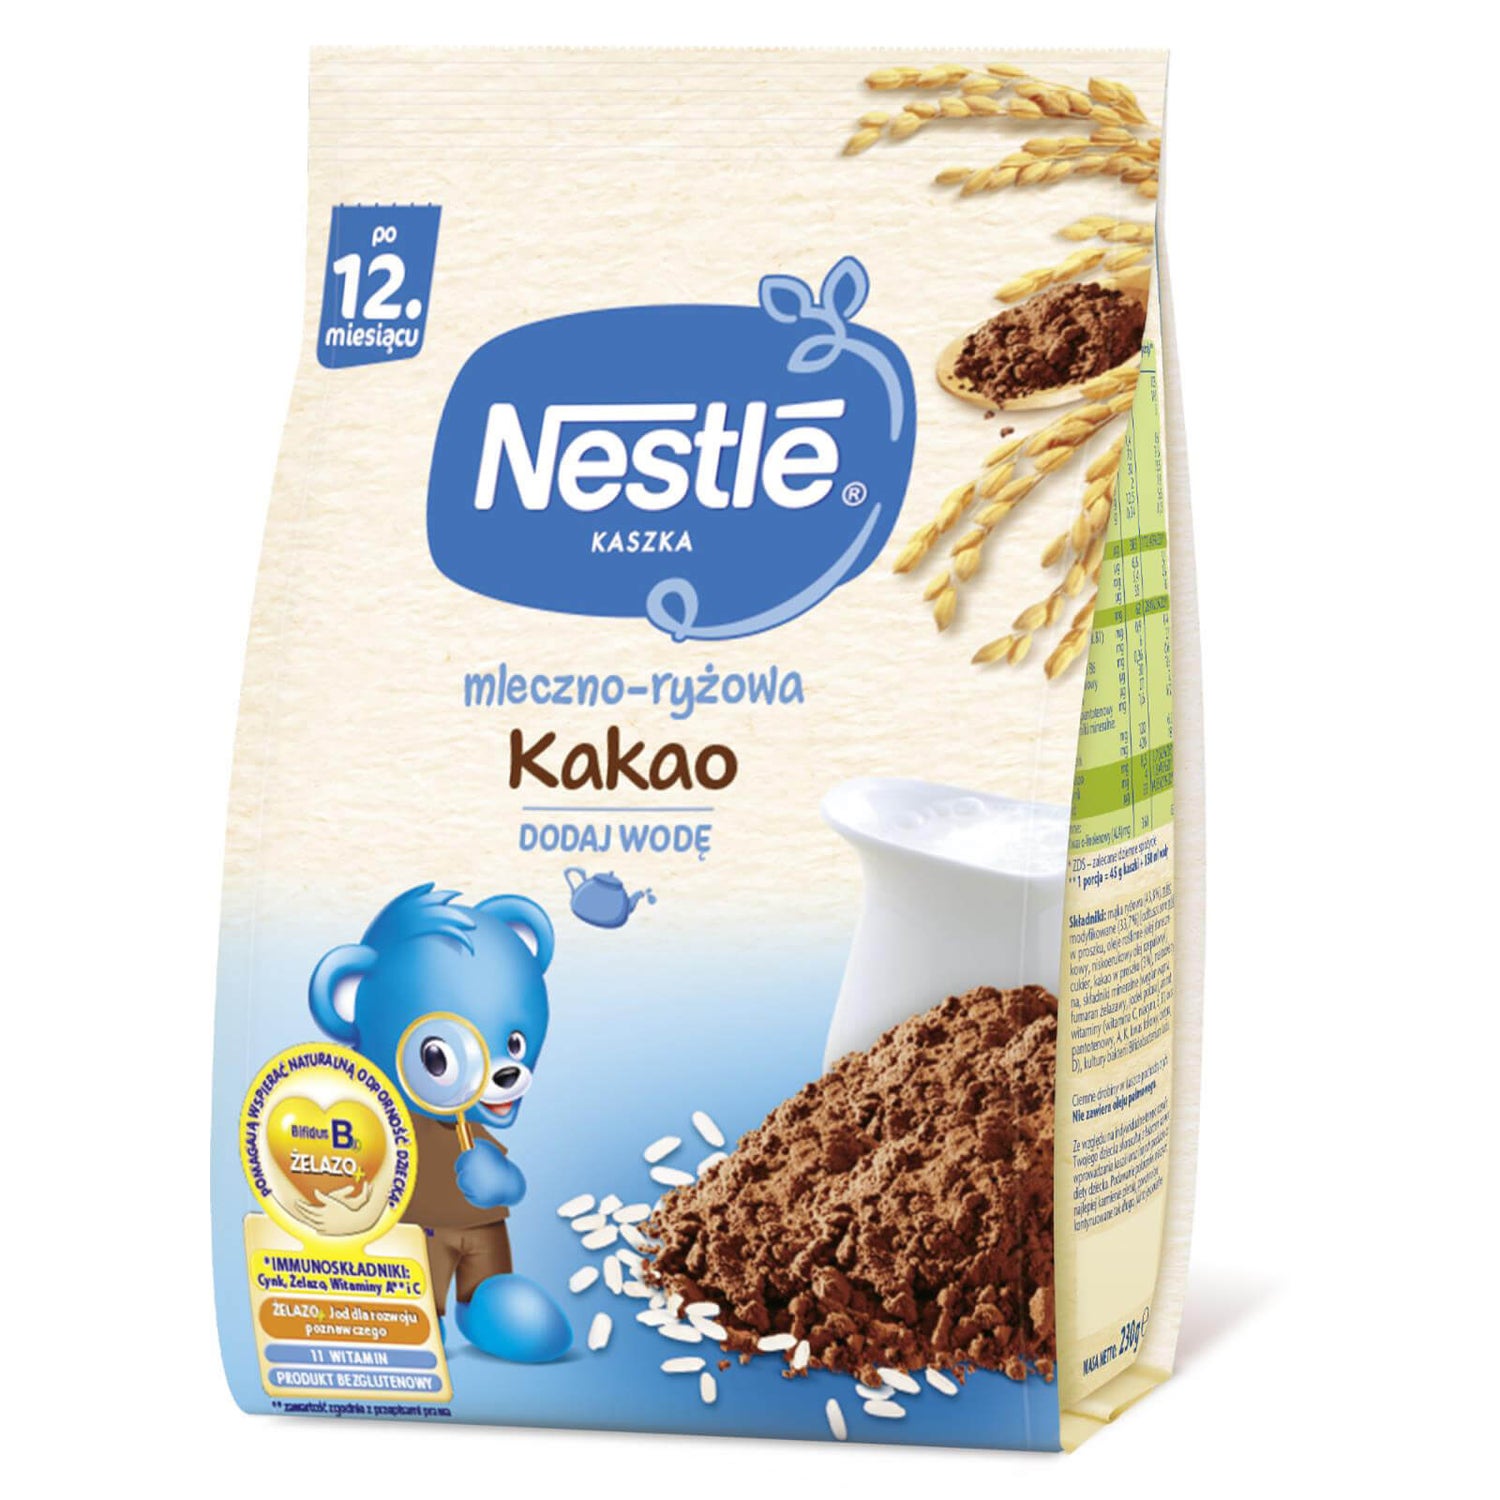 Nestlé Kaszka mleczno-ryżowa Kakao- 230g